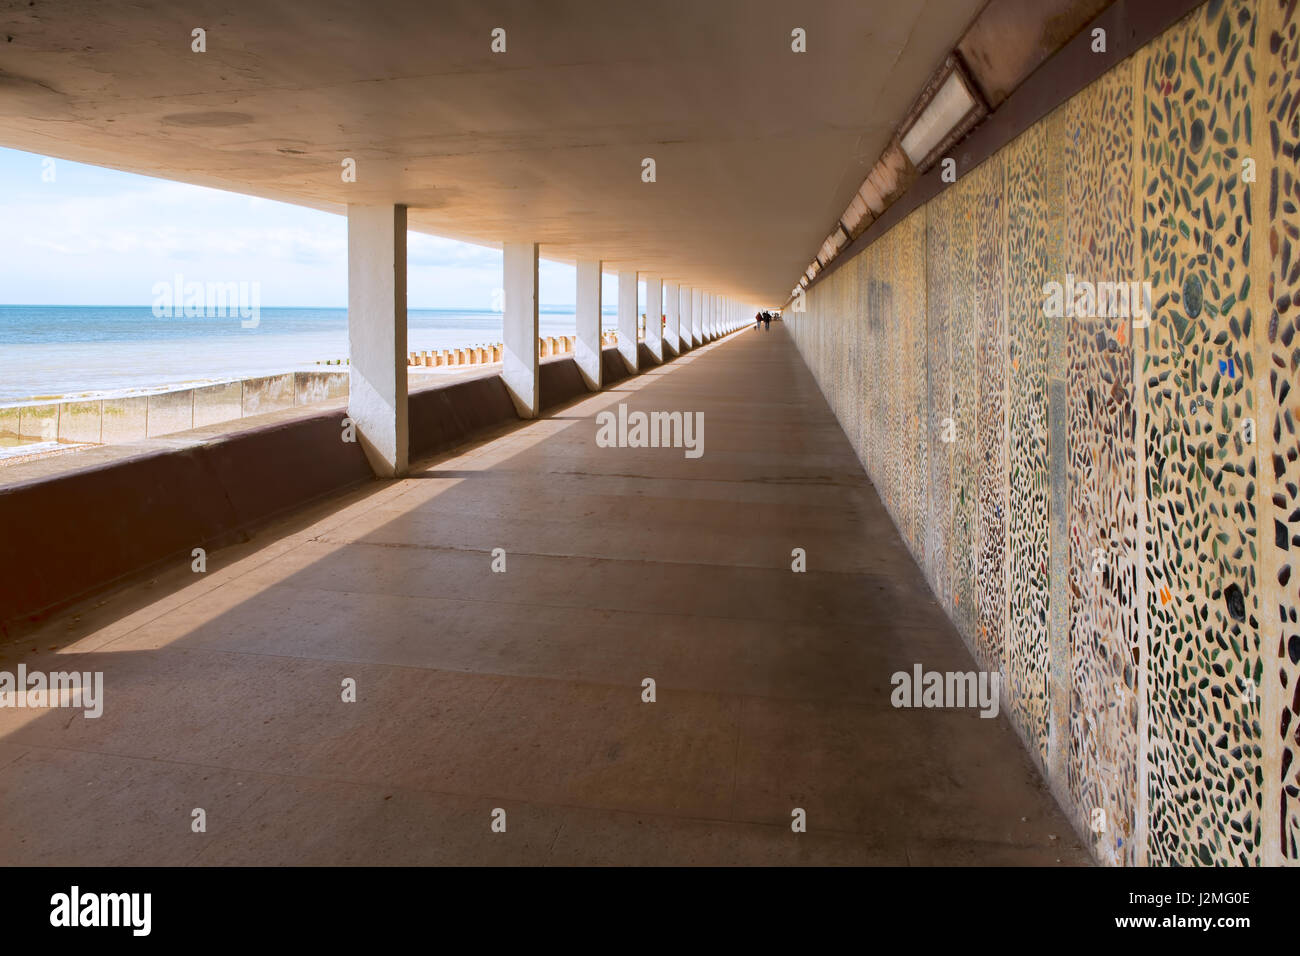 Ein Strand bedeckt konkrete Gehweg mit Mosaik-Muster Wand, Blick auf das Meer zu einer Seite und starken führenden Linien von der Kamera entfernt. Stockfoto